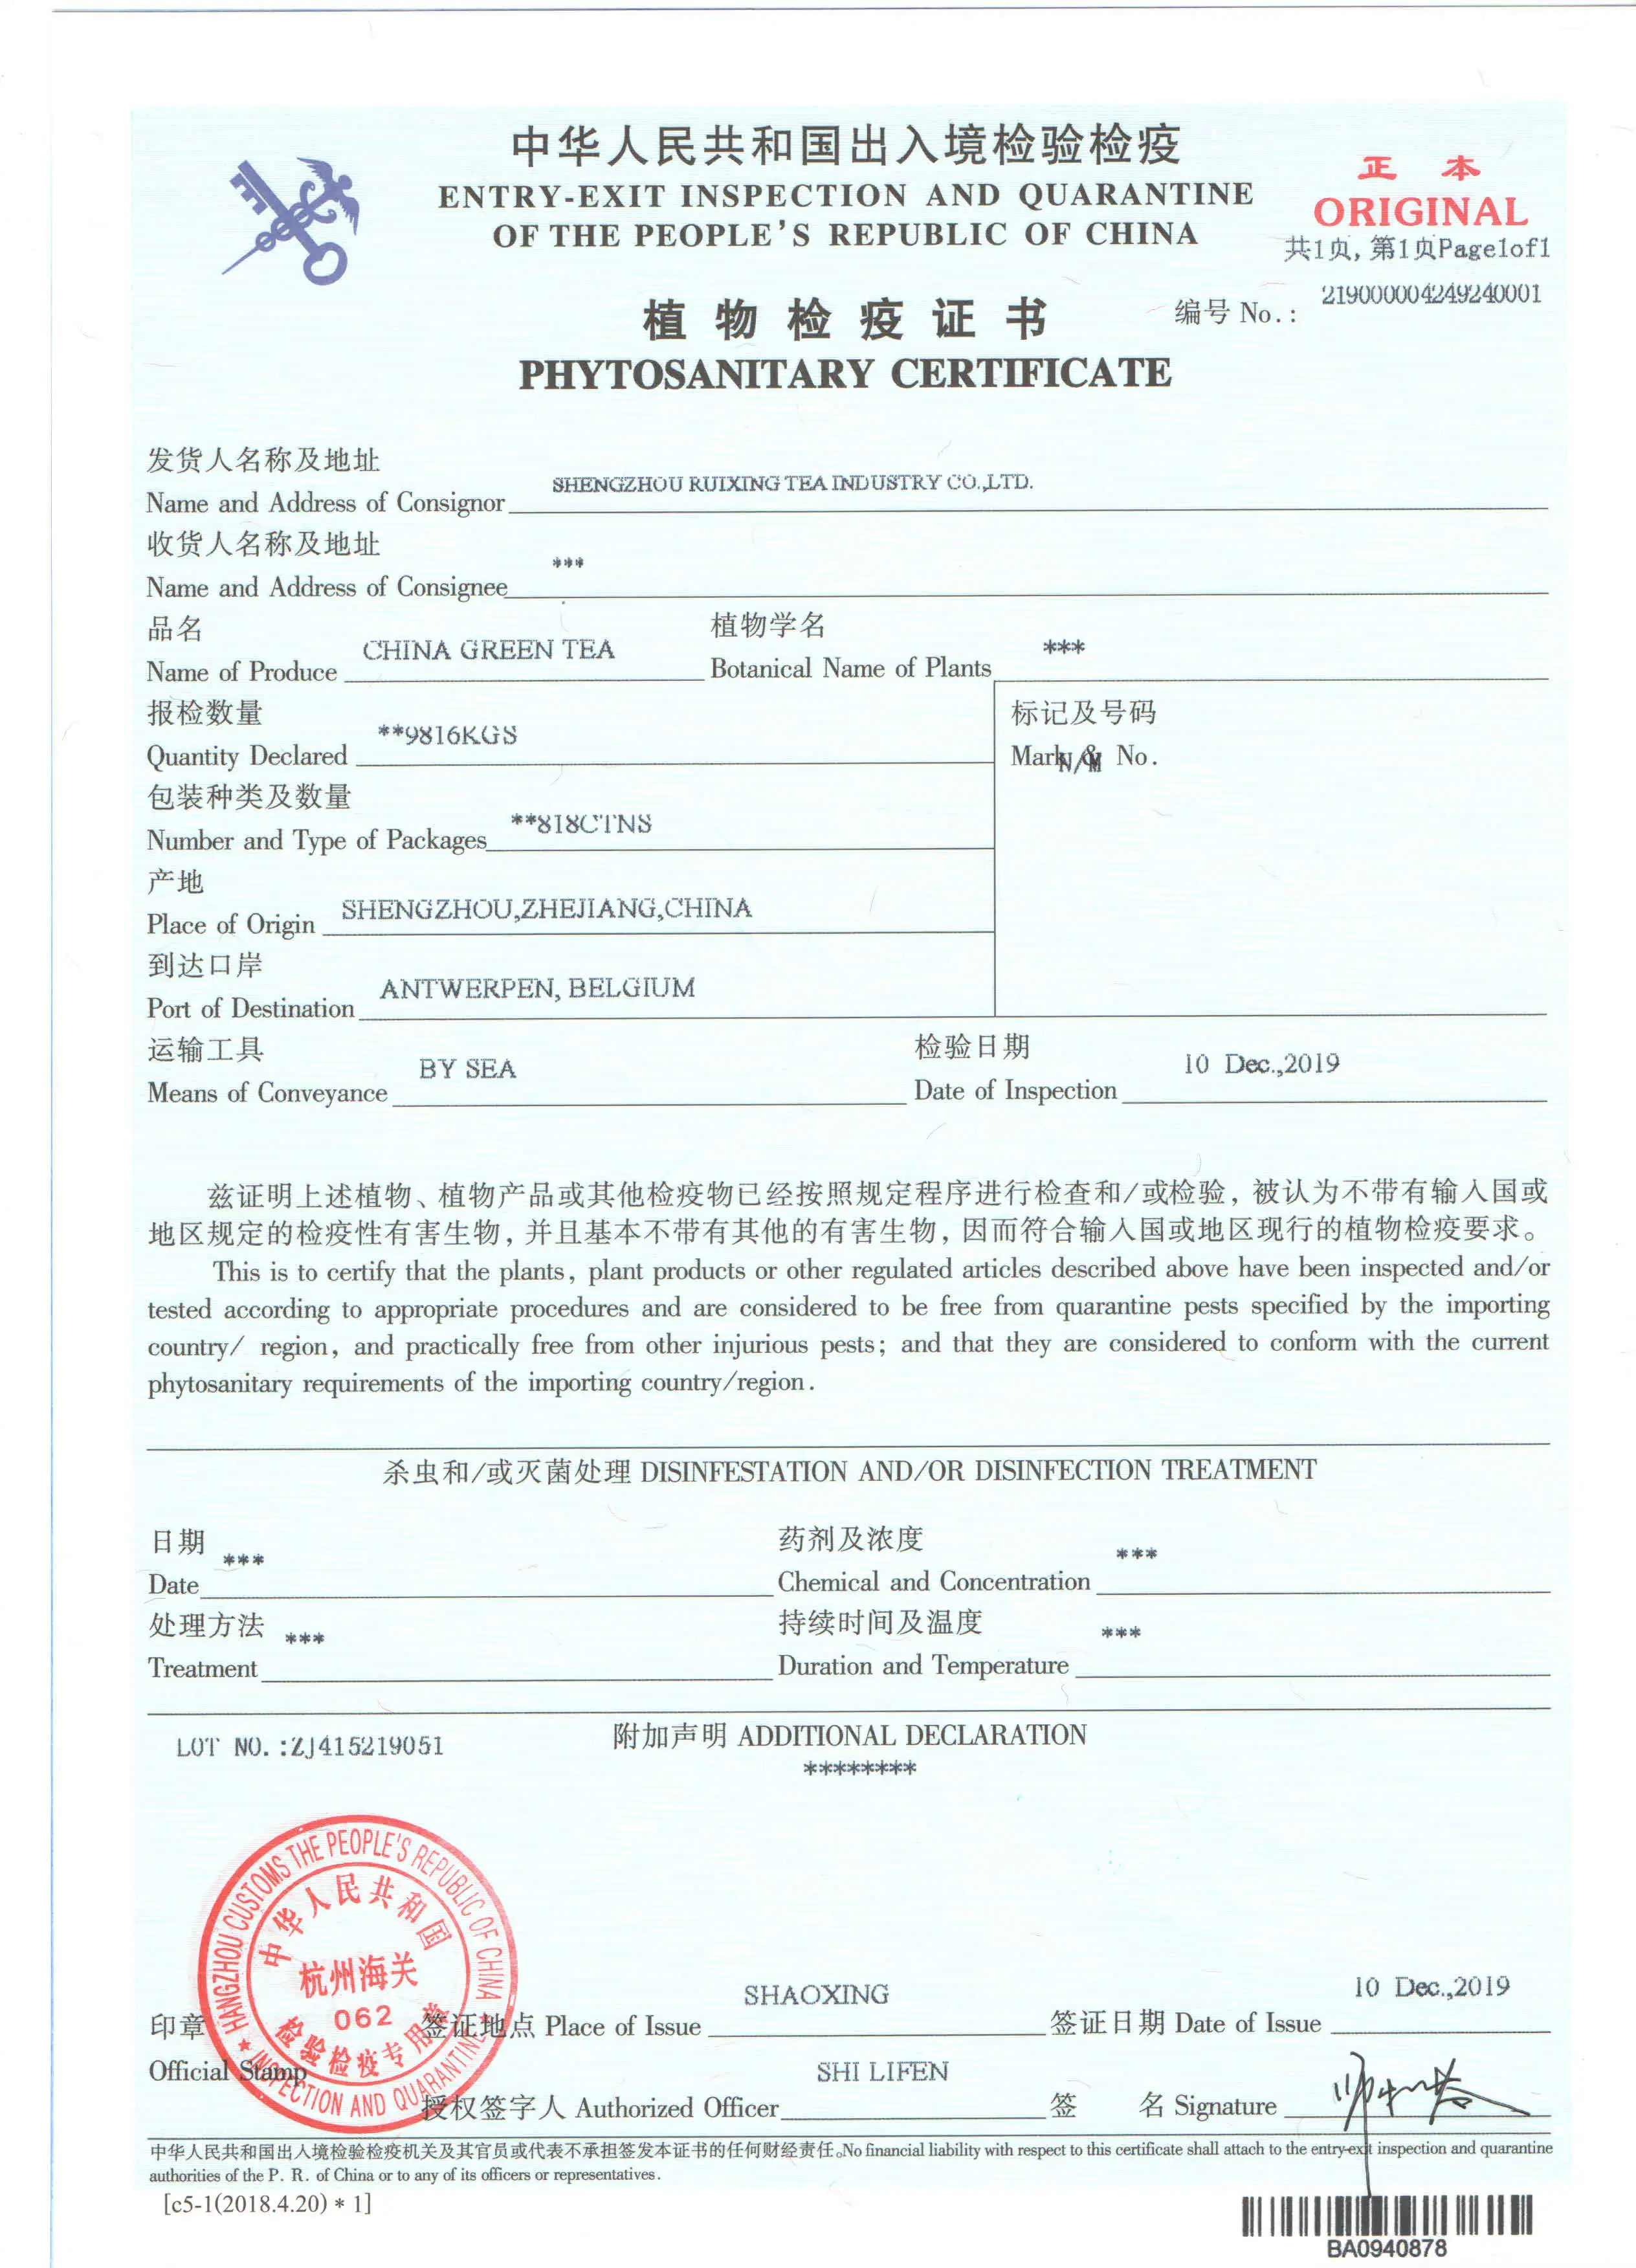 形状 紧密的薄圆 产品地点 中国浙江省 味道 醇厚 包装 定制 证书